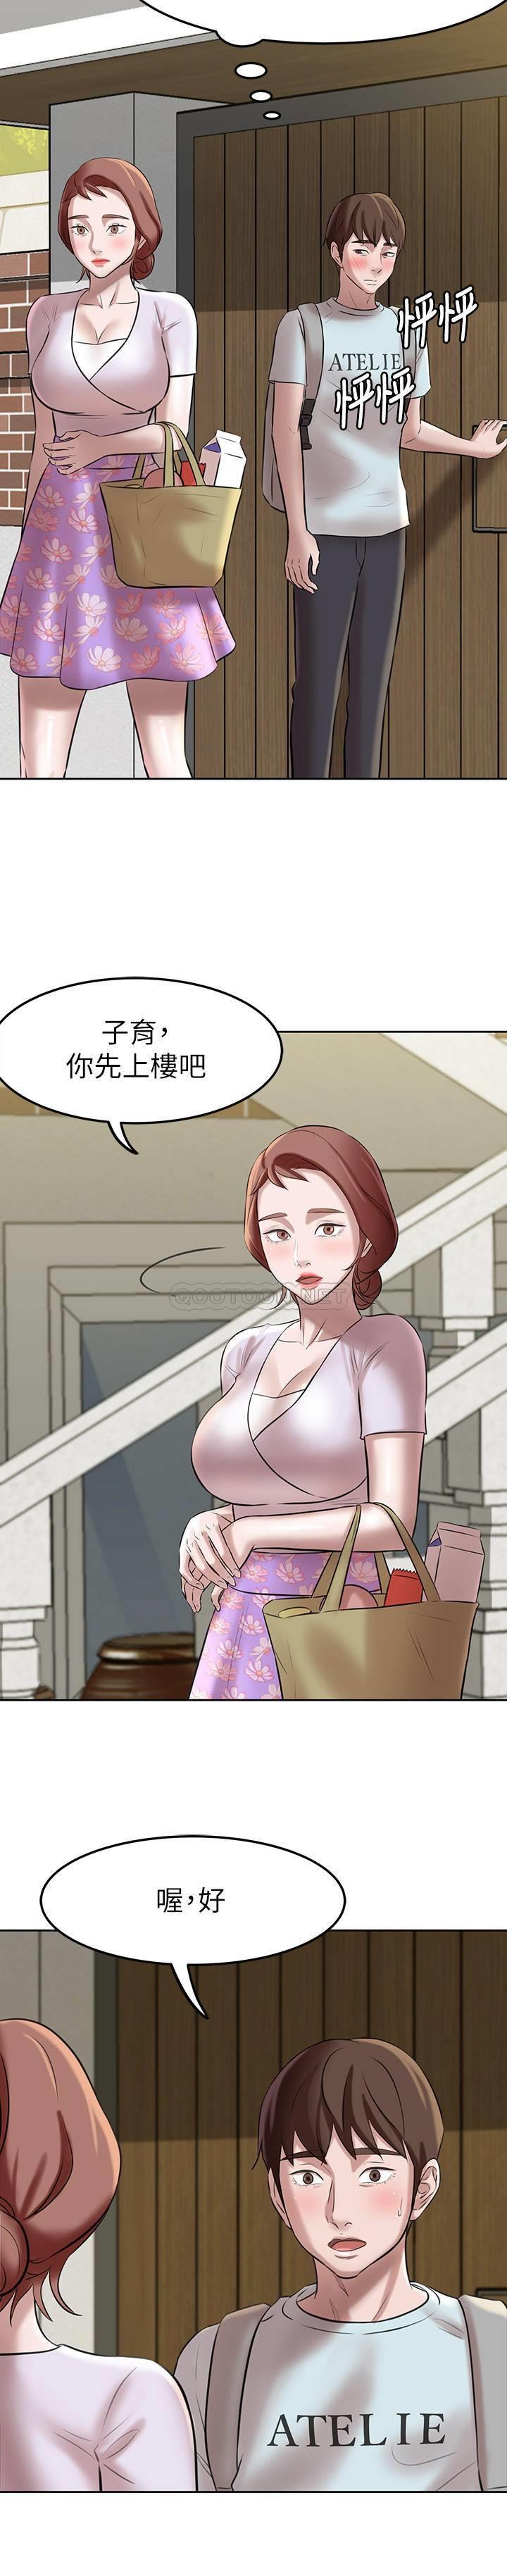 韩国污漫画 小褲褲筆記 第5话 - 好想看她的裙底风光 19